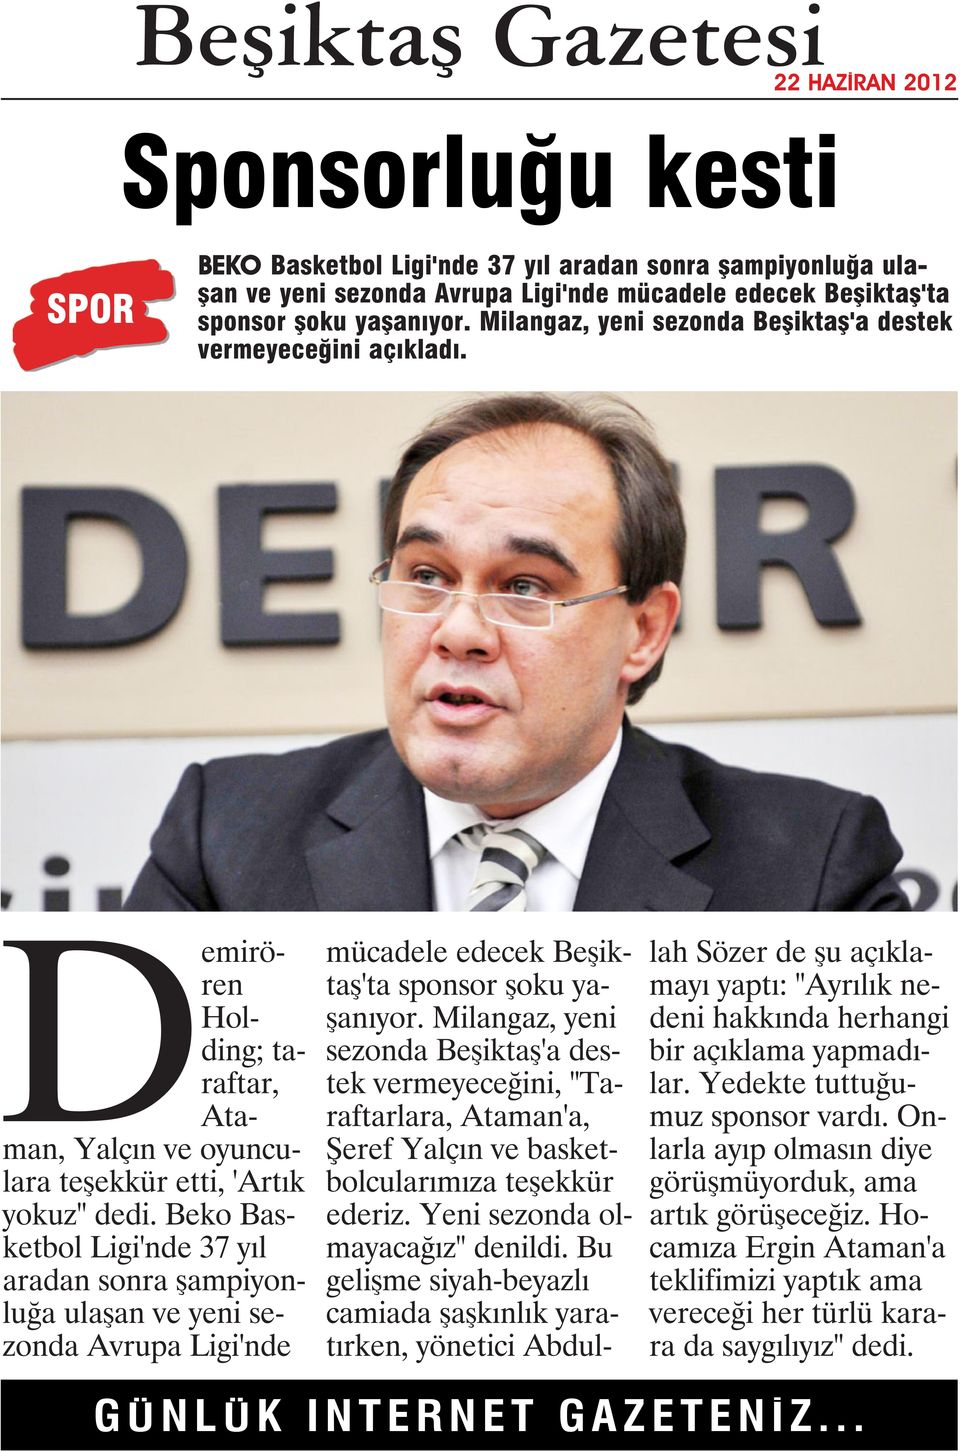 Beko Basketbol Ligi'nde 37 yıl aradan sonra şampiyonluğa ulaşan ve yeni sezonda Avrupa Ligi'nde mücadele edecek Beşiktaş'ta sponsor şoku yaşanıyor.